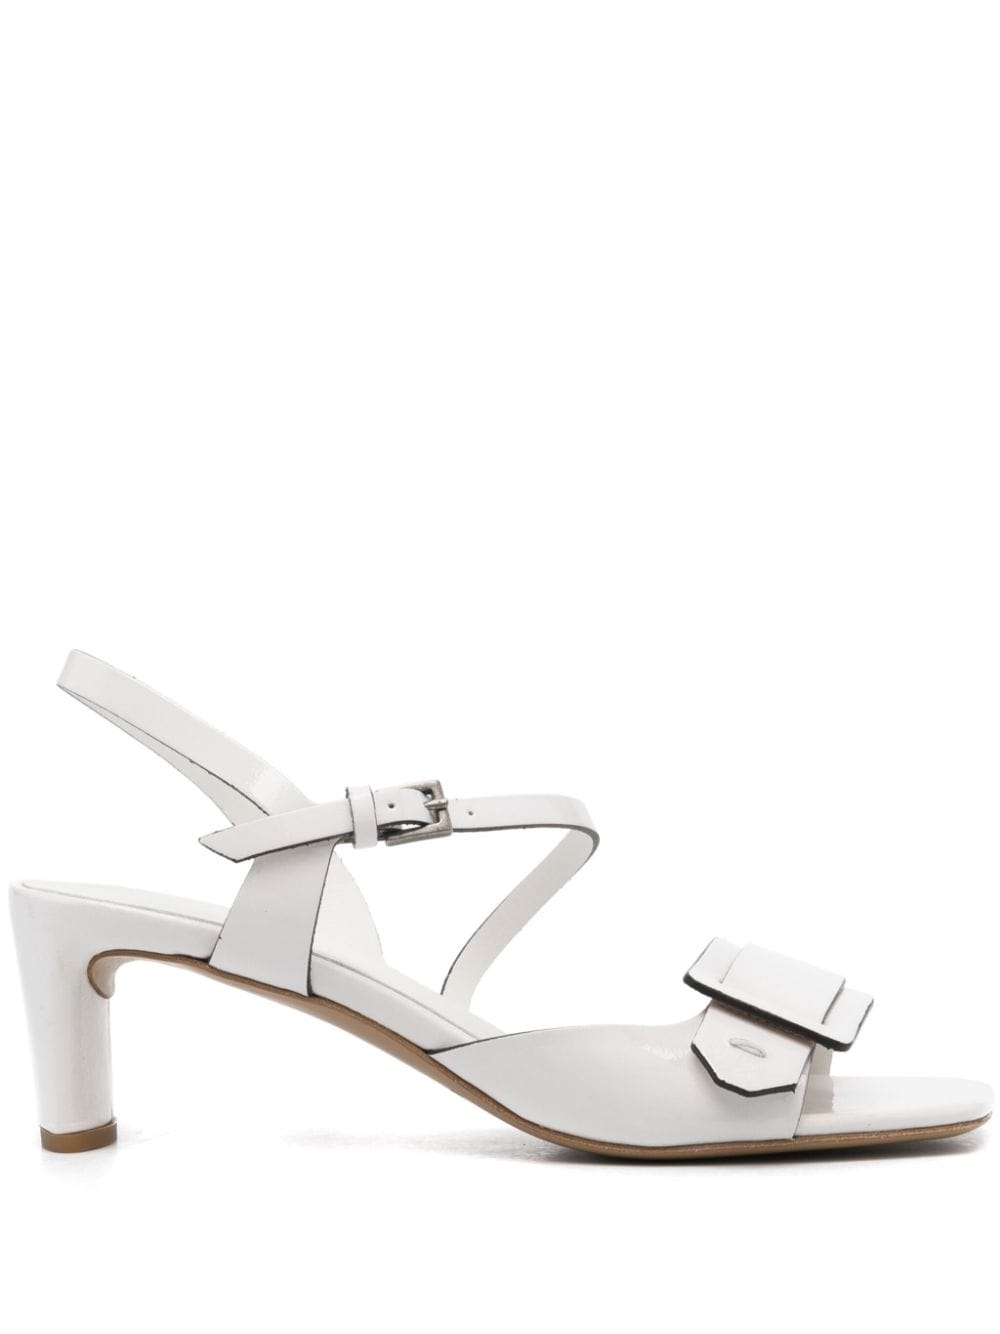 Del Carlo 55mm Moore patent leather sandals - White von Del Carlo